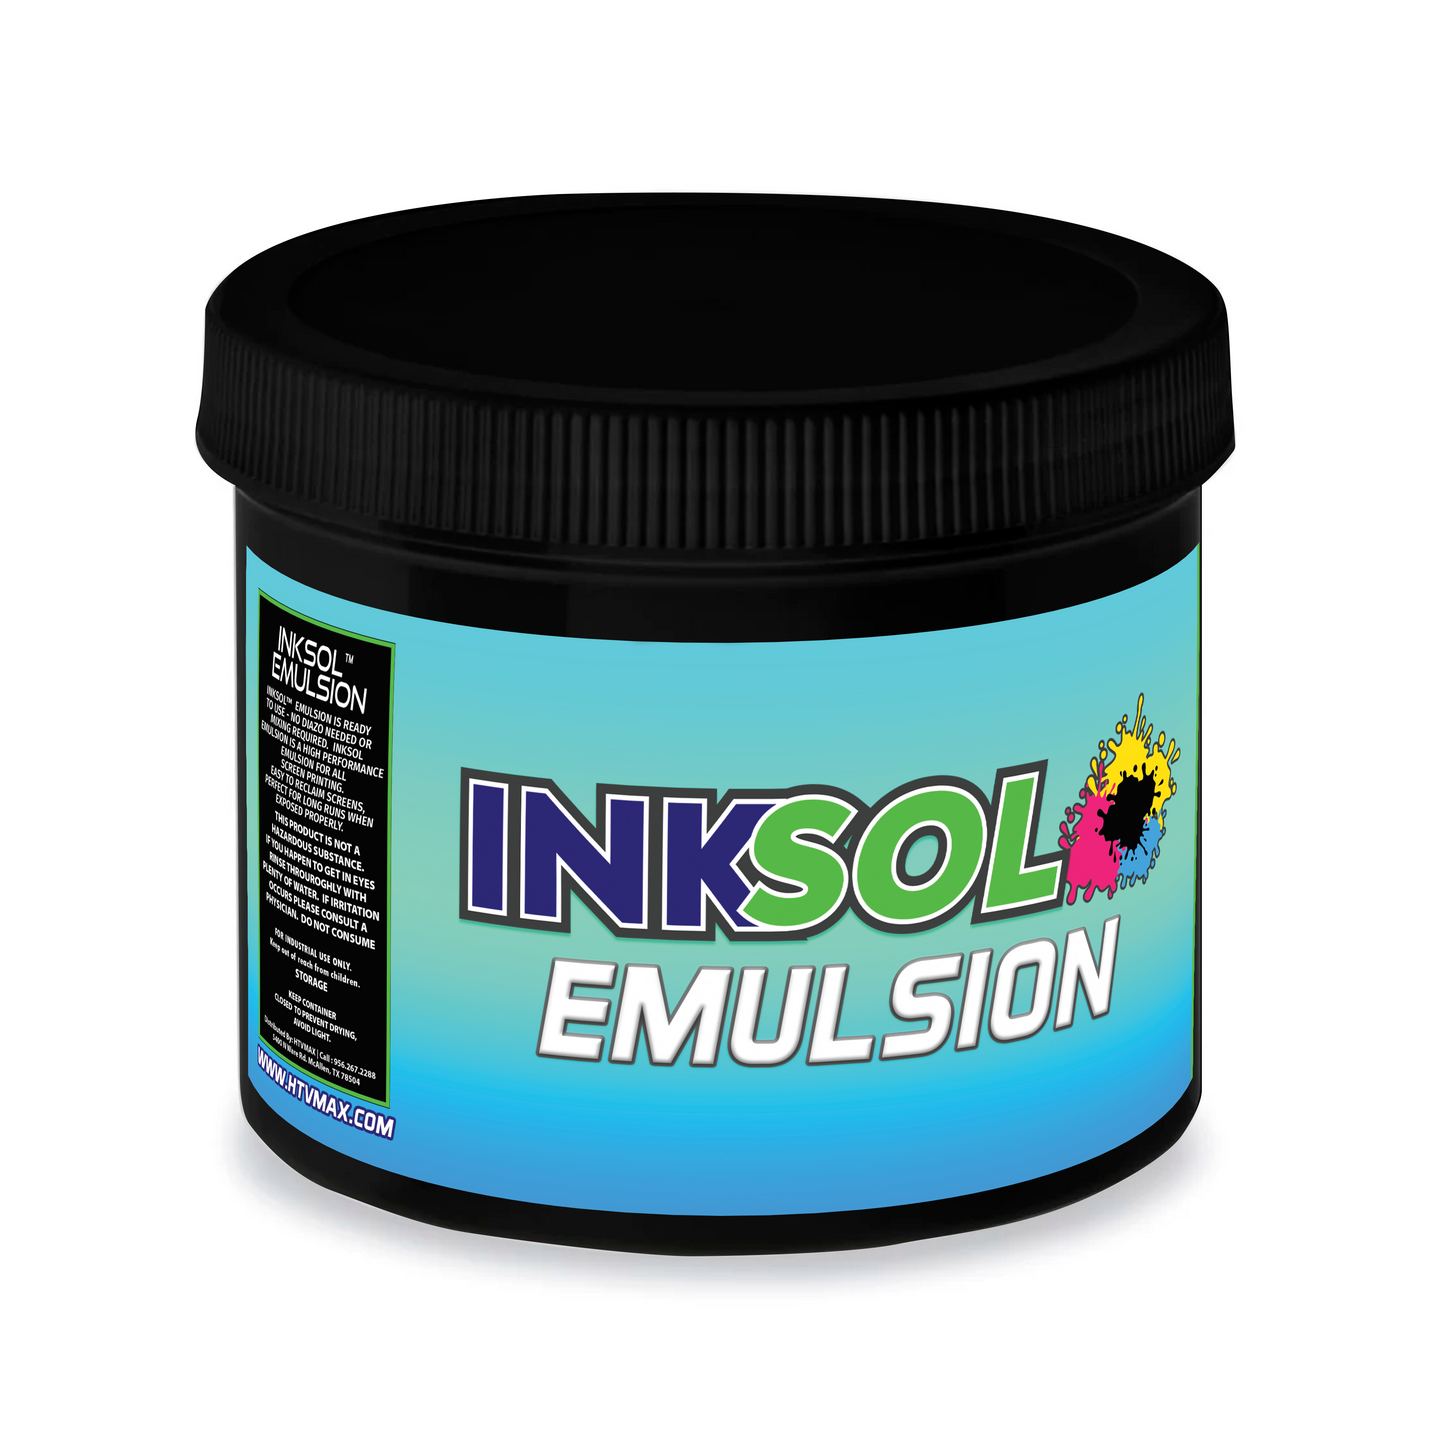 InkSol™ Emulsion